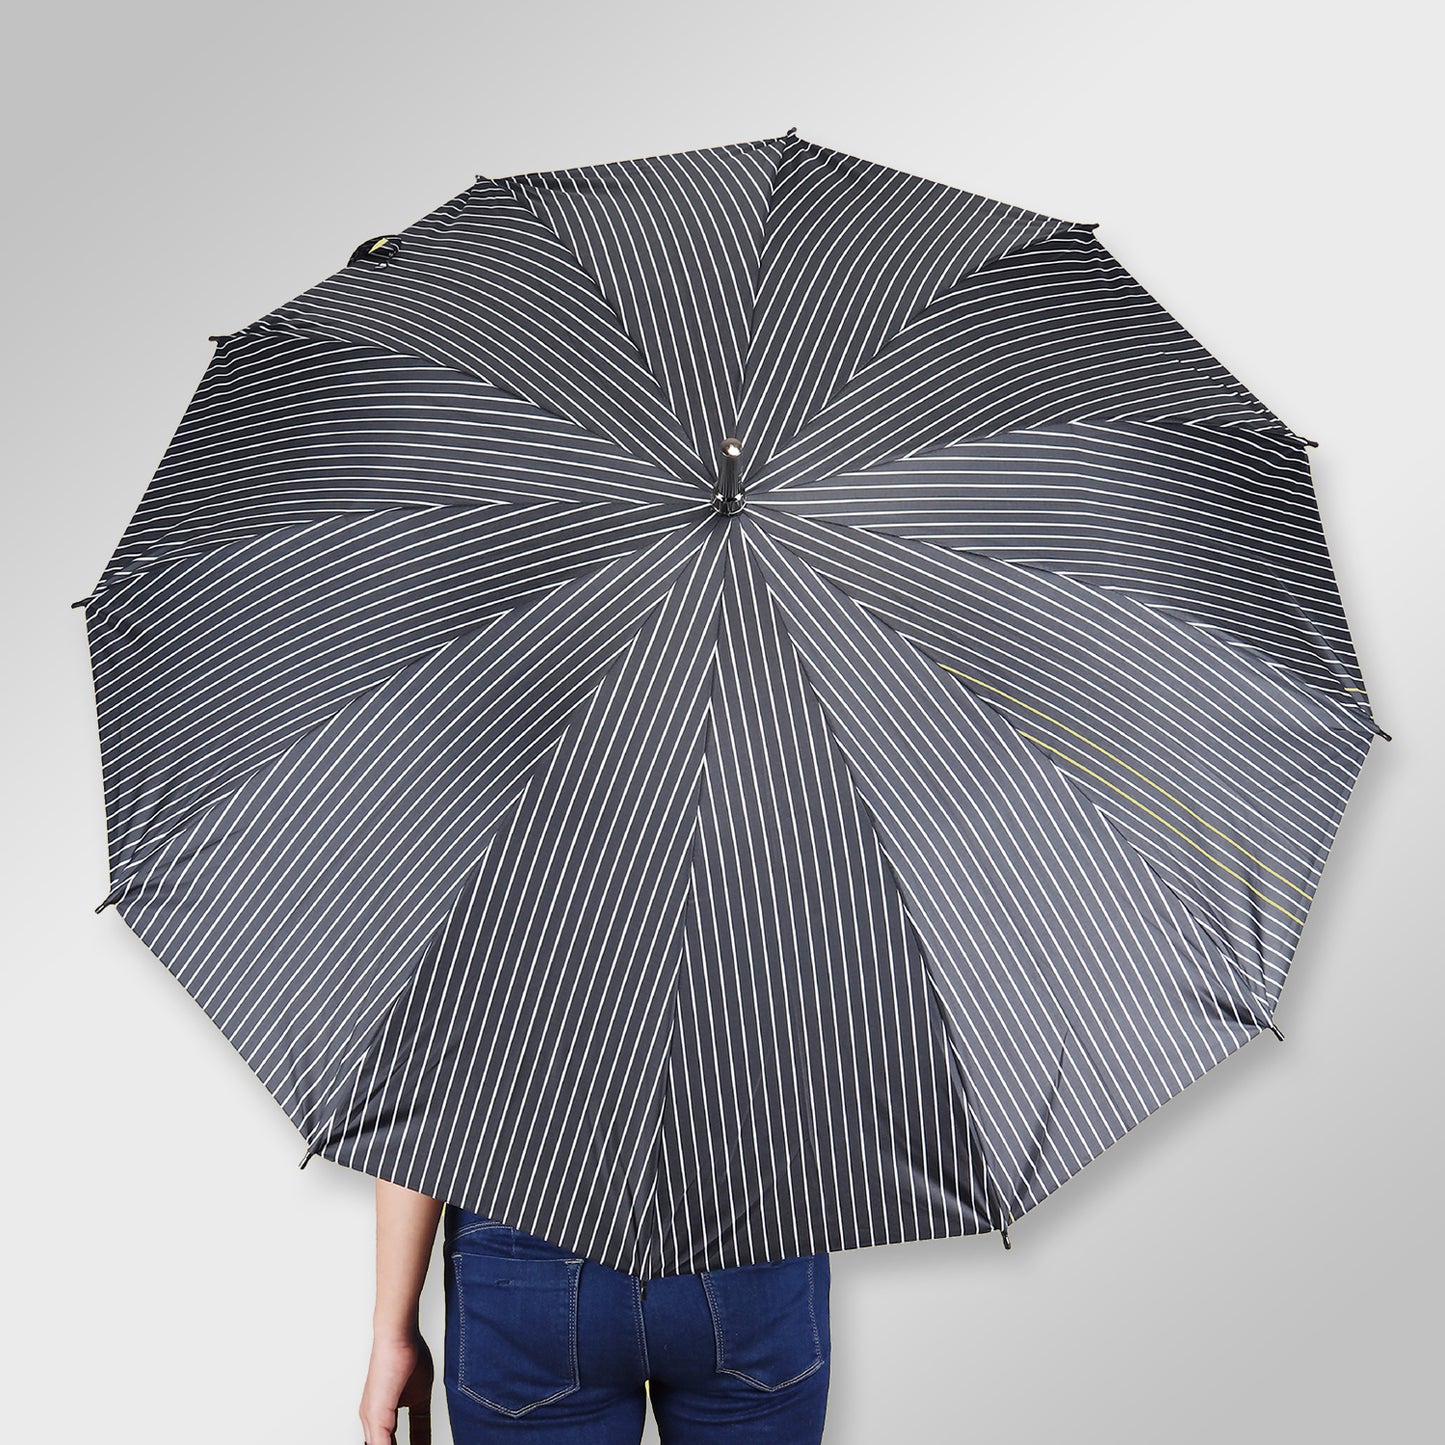 SUMMER | Automatic Open Fashion Umbrella - Black